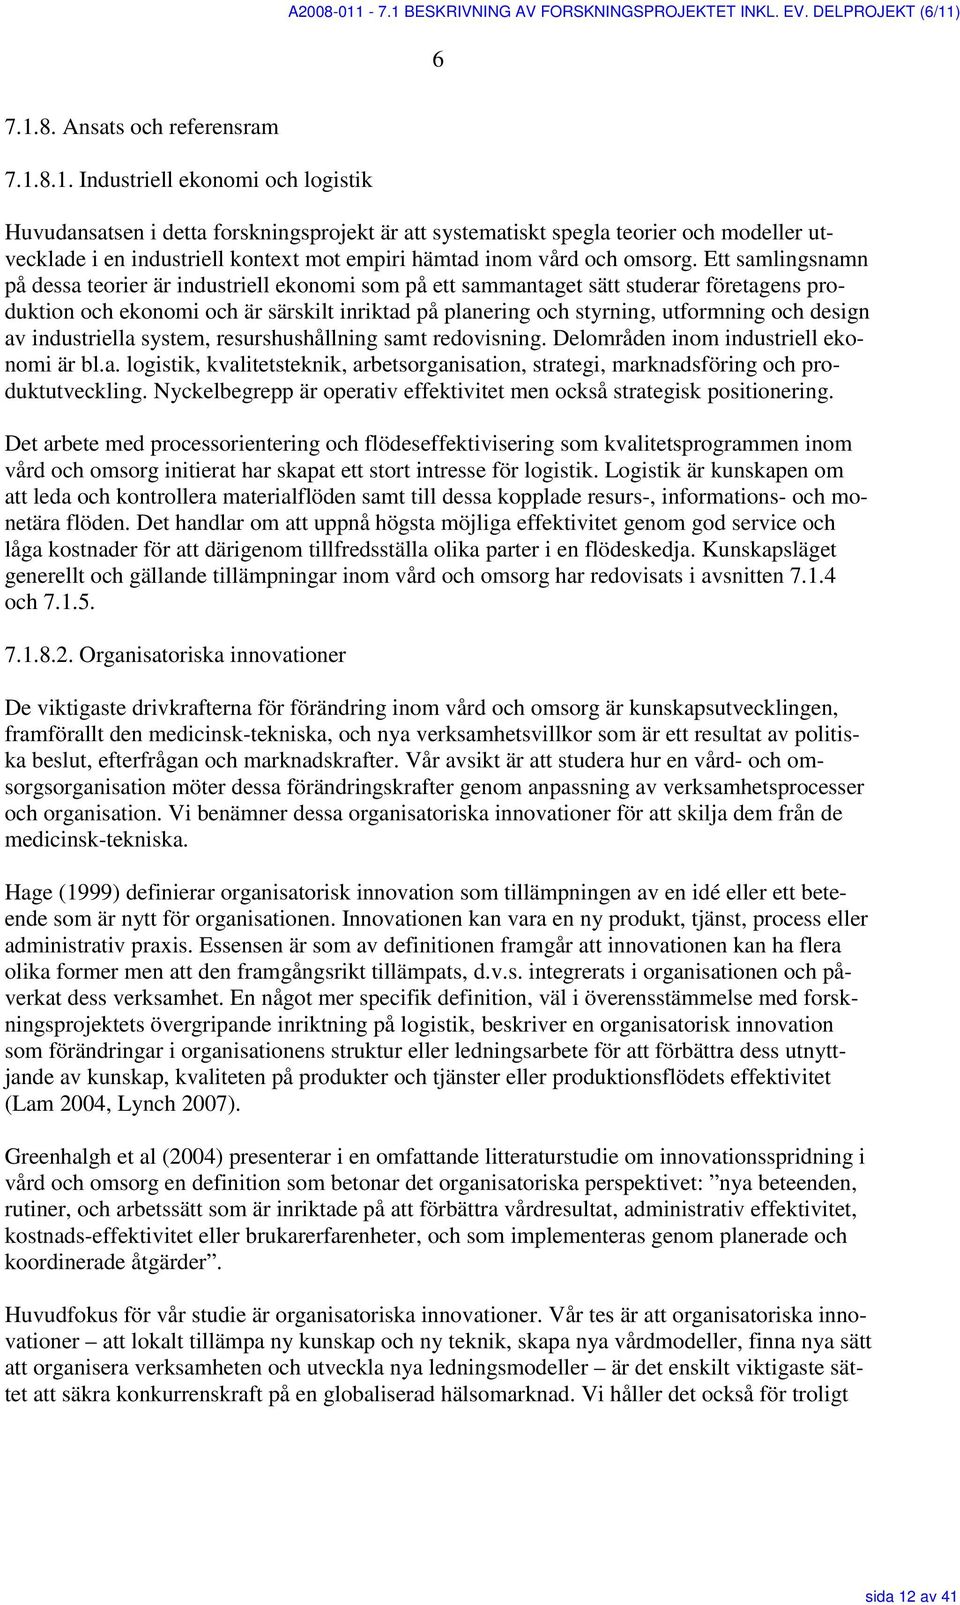 BESKRIVNING AV FORSKNINGSPROJEKTET INKL. EV. DELPROJEKT (6/11